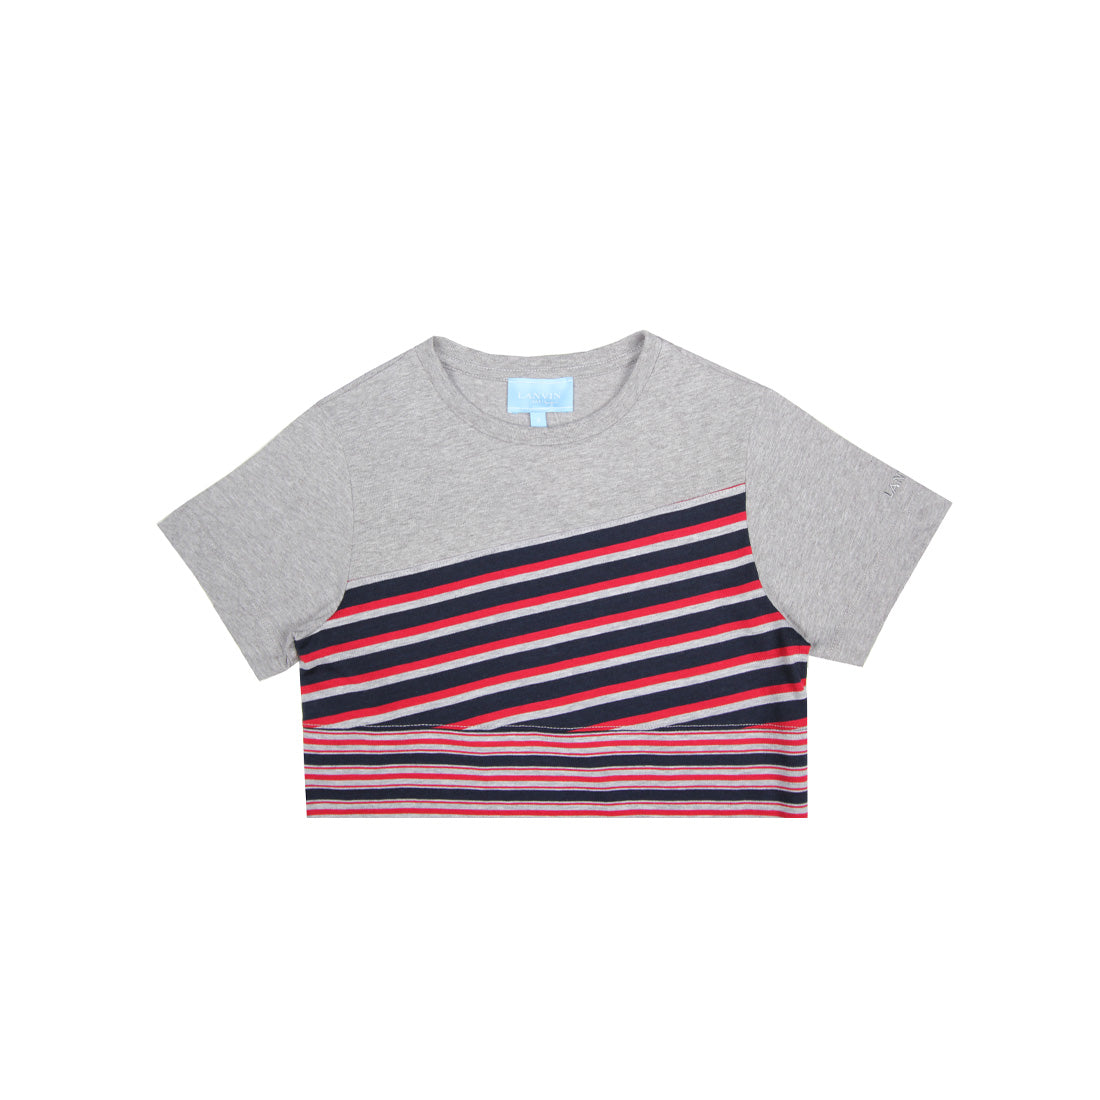 Lanvin Kids Stripe Design Grey T-Shirt - Retro Designer Wear